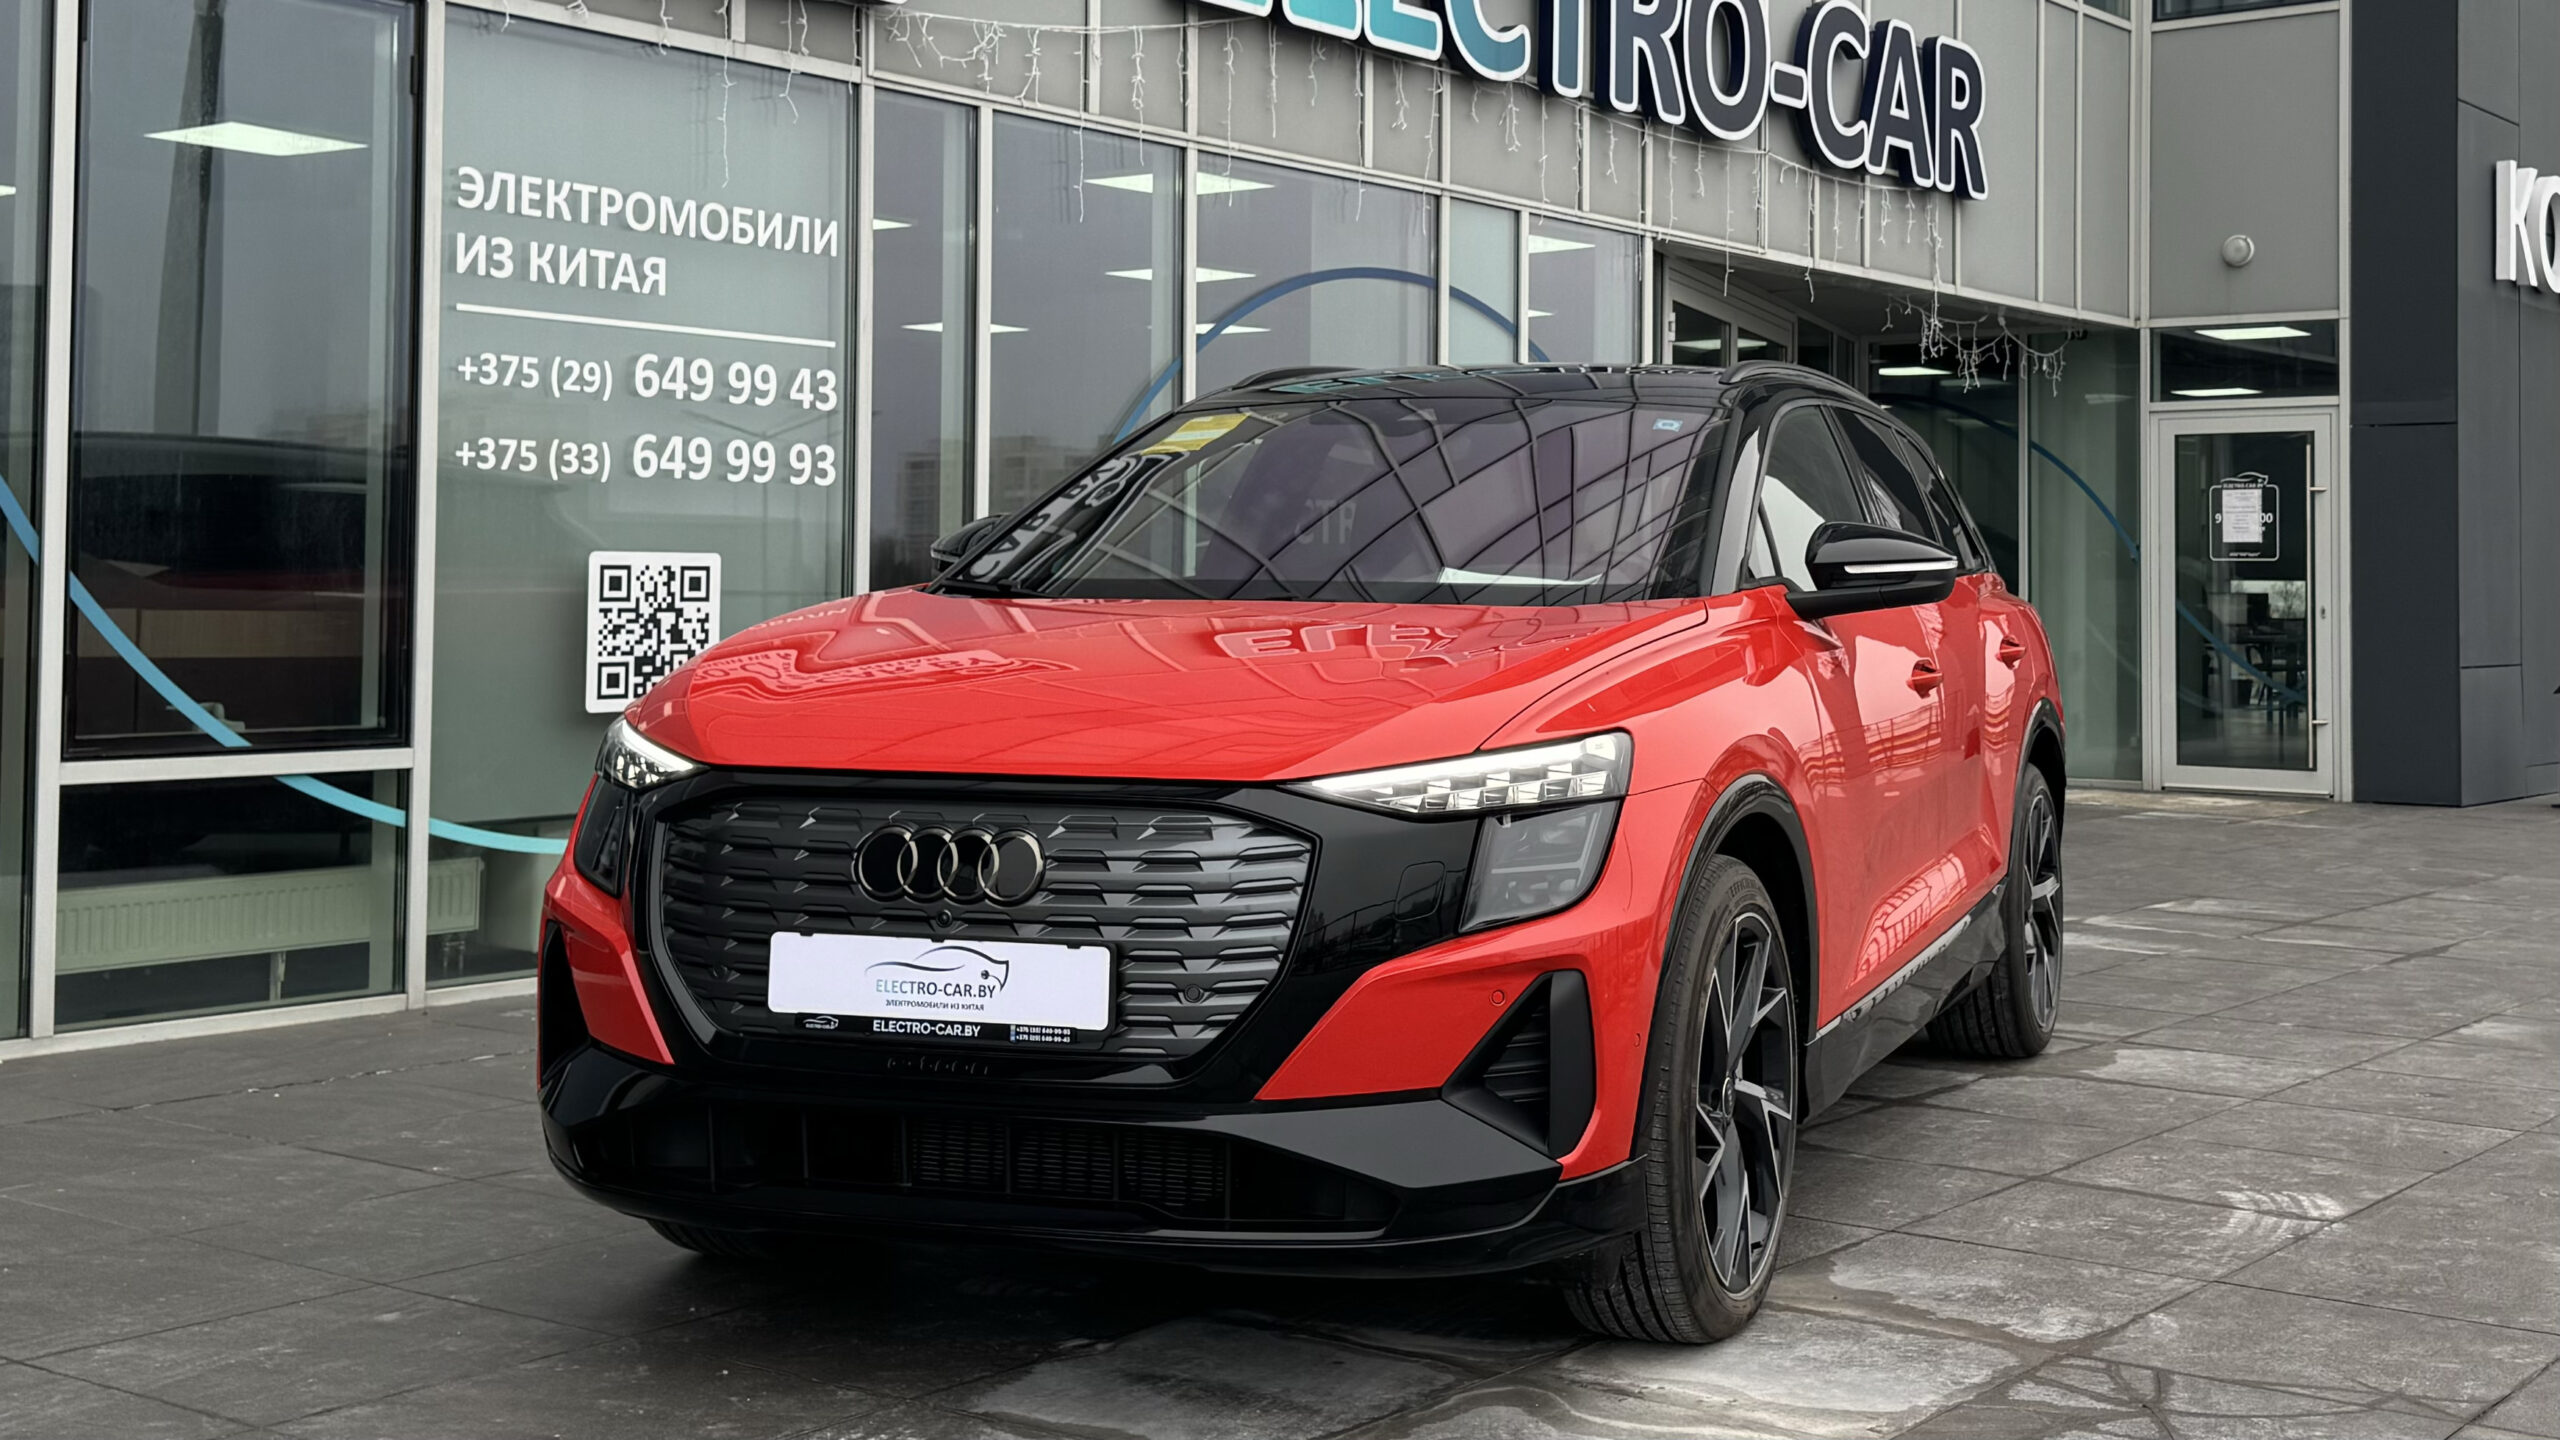 Audi Q5 e-tron quattro edition one купить в Минске из наличия электромобиль